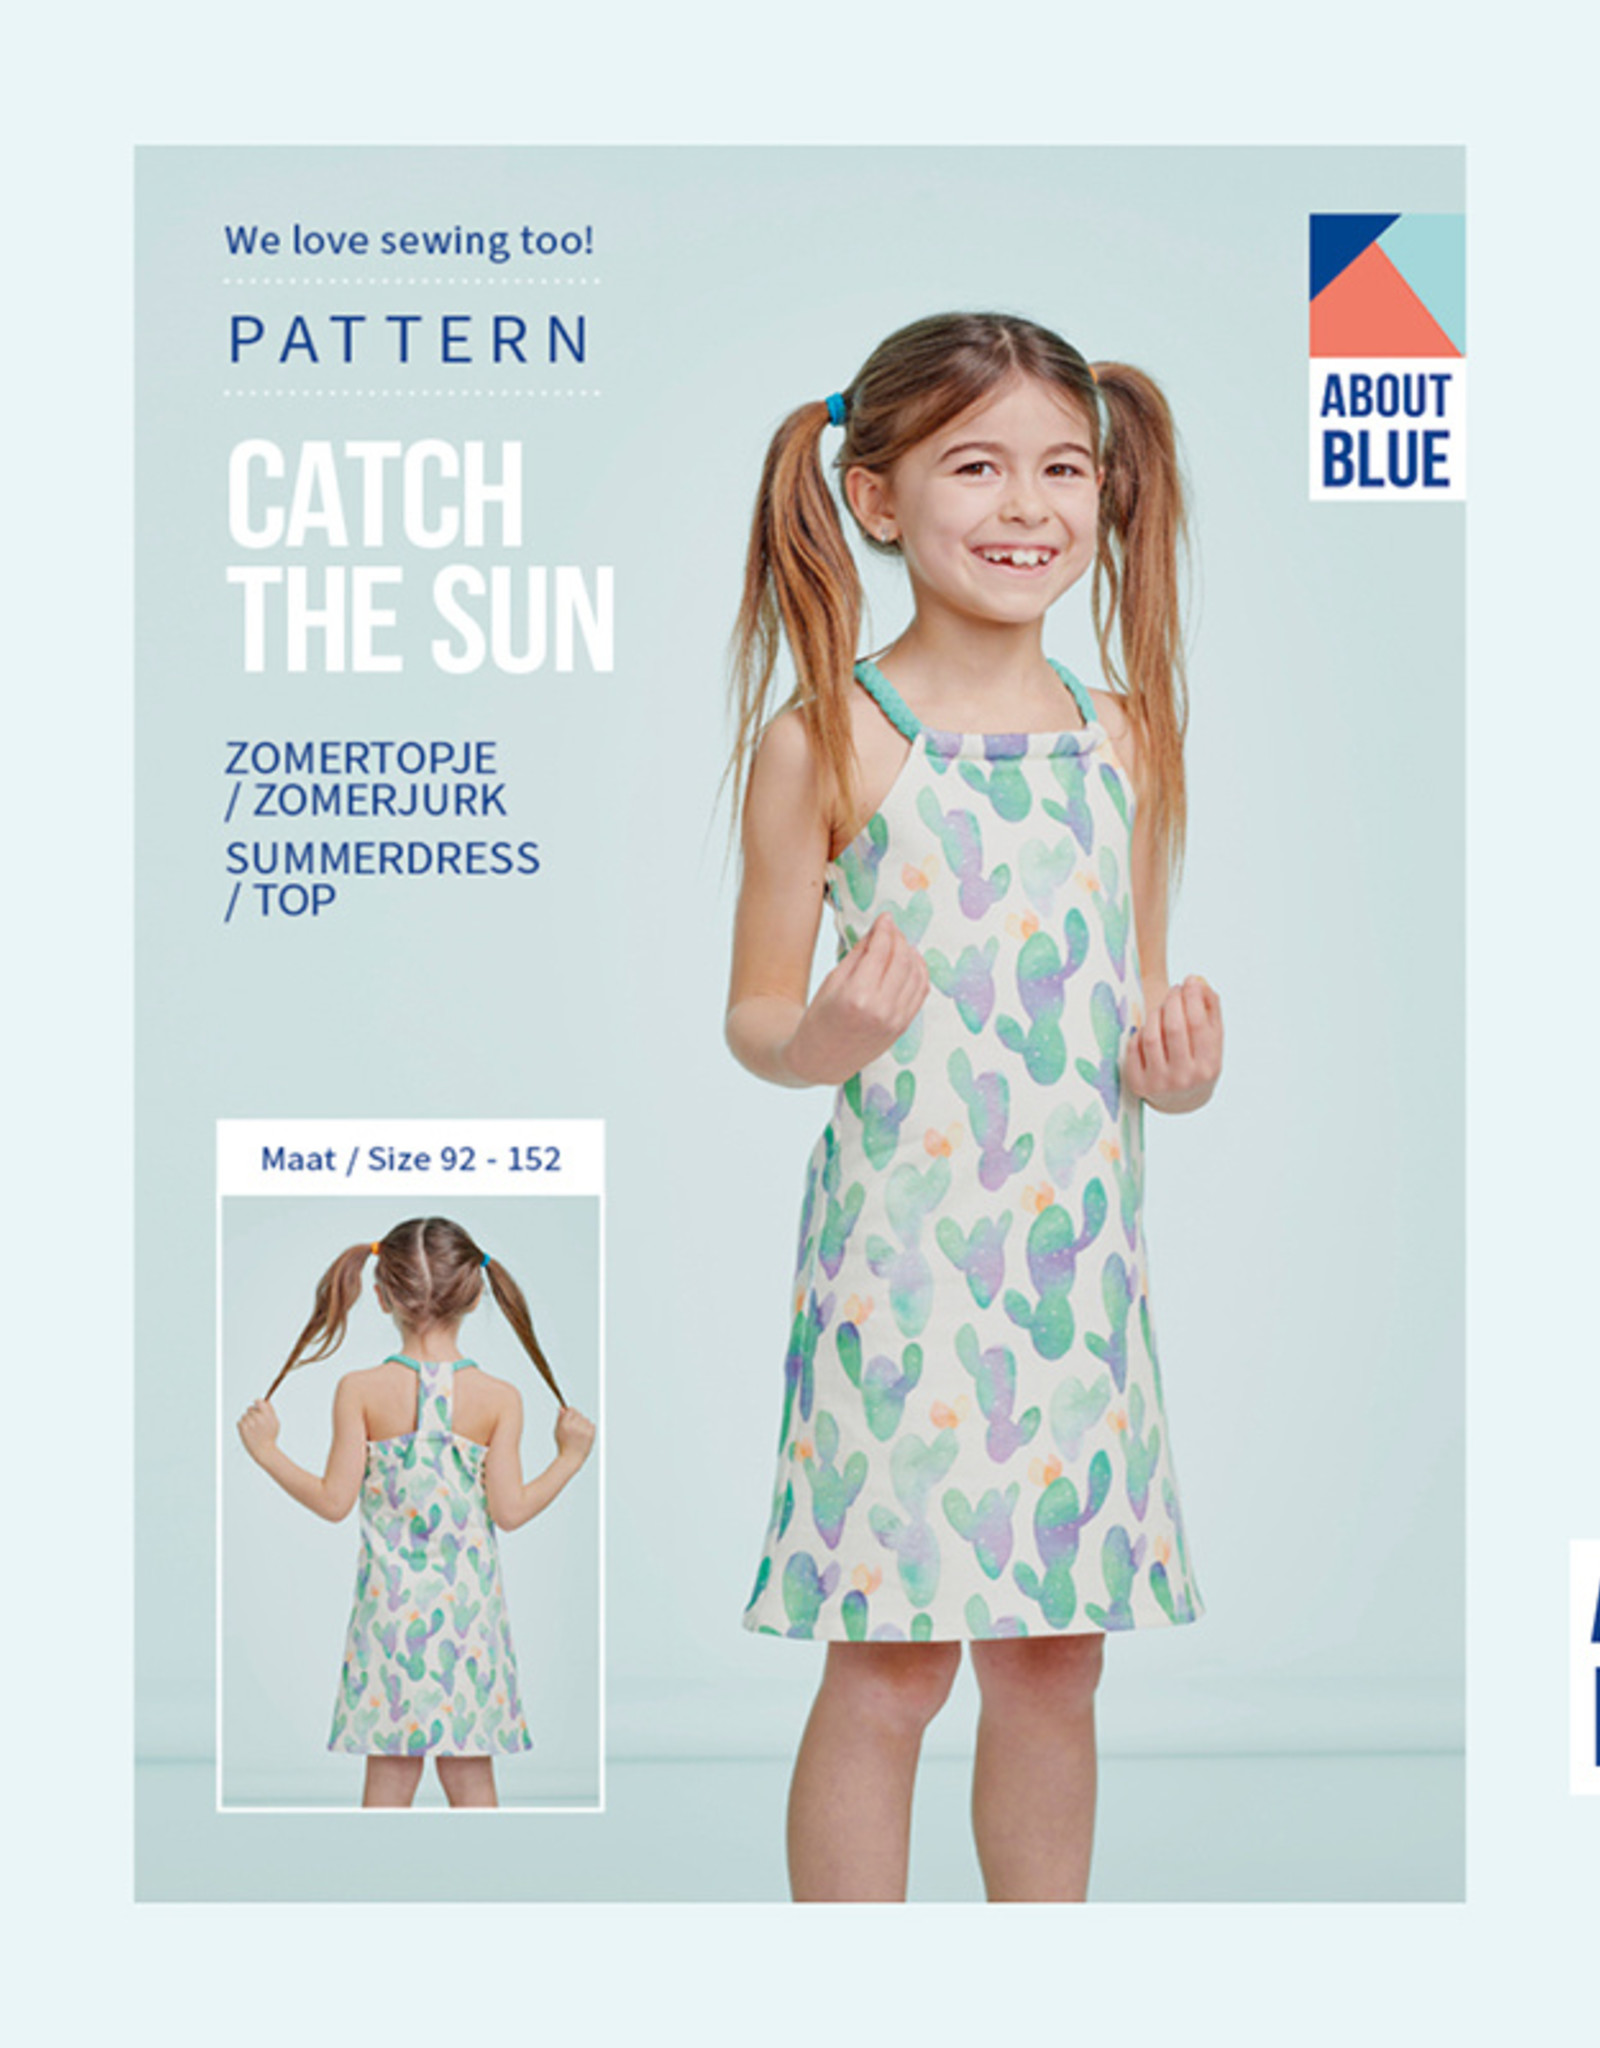 About Blue Fabrics Catch the sun kids zomertopje/zomerjurk